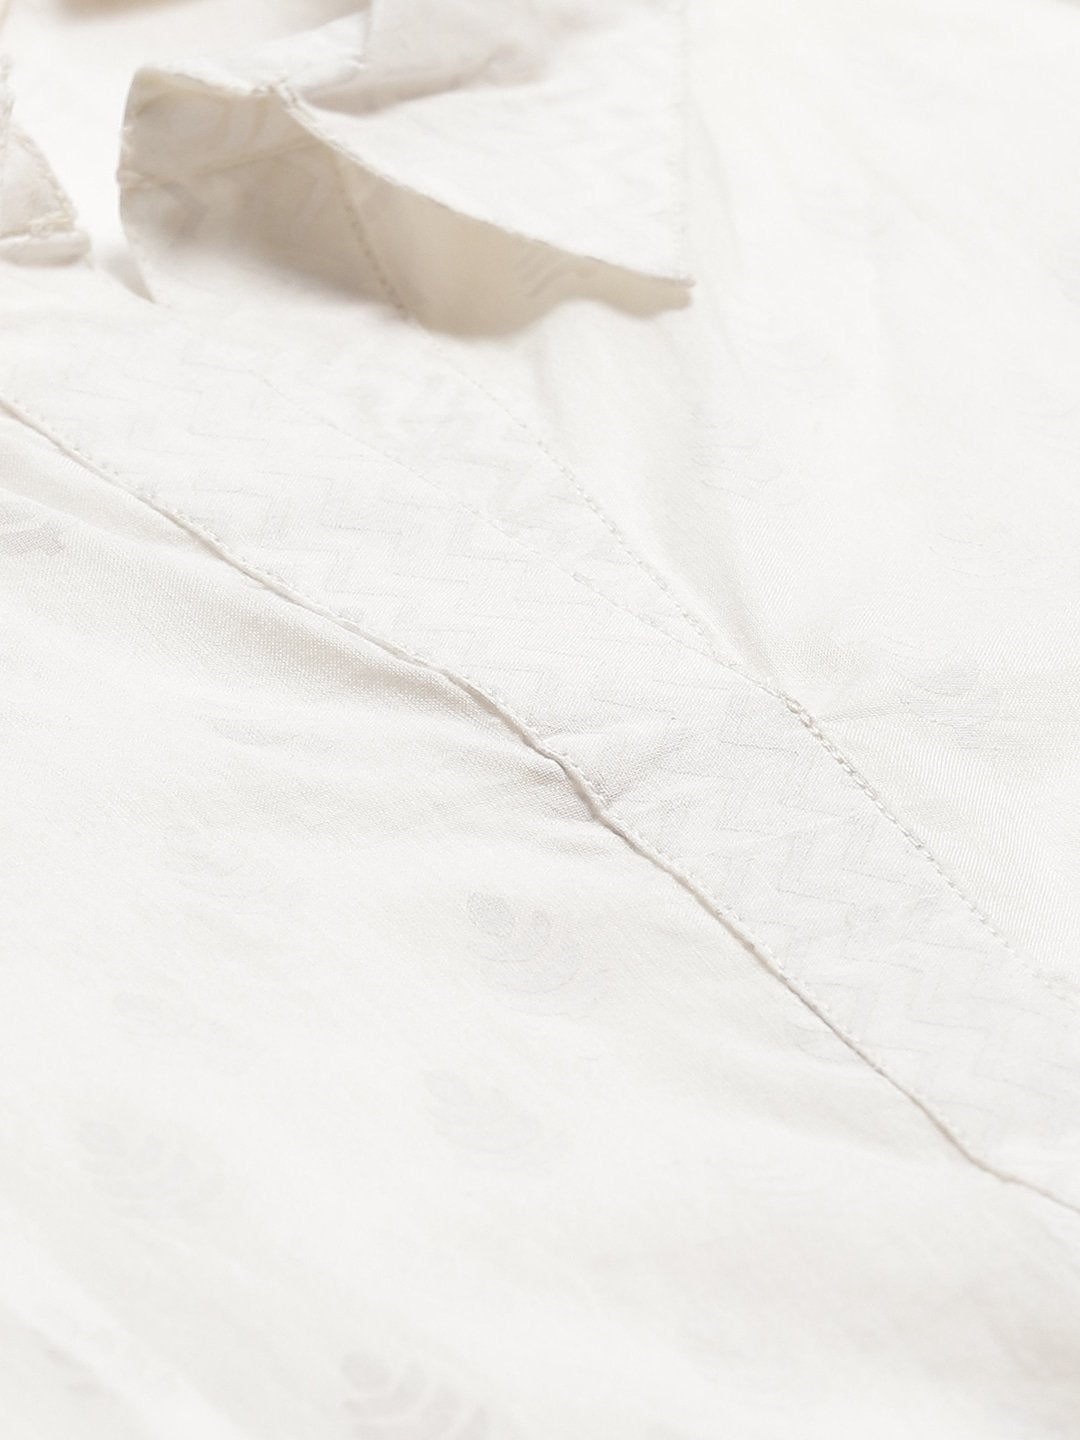 Women's White Printed Cotton Kurti With Palazzo  - Wahenoor